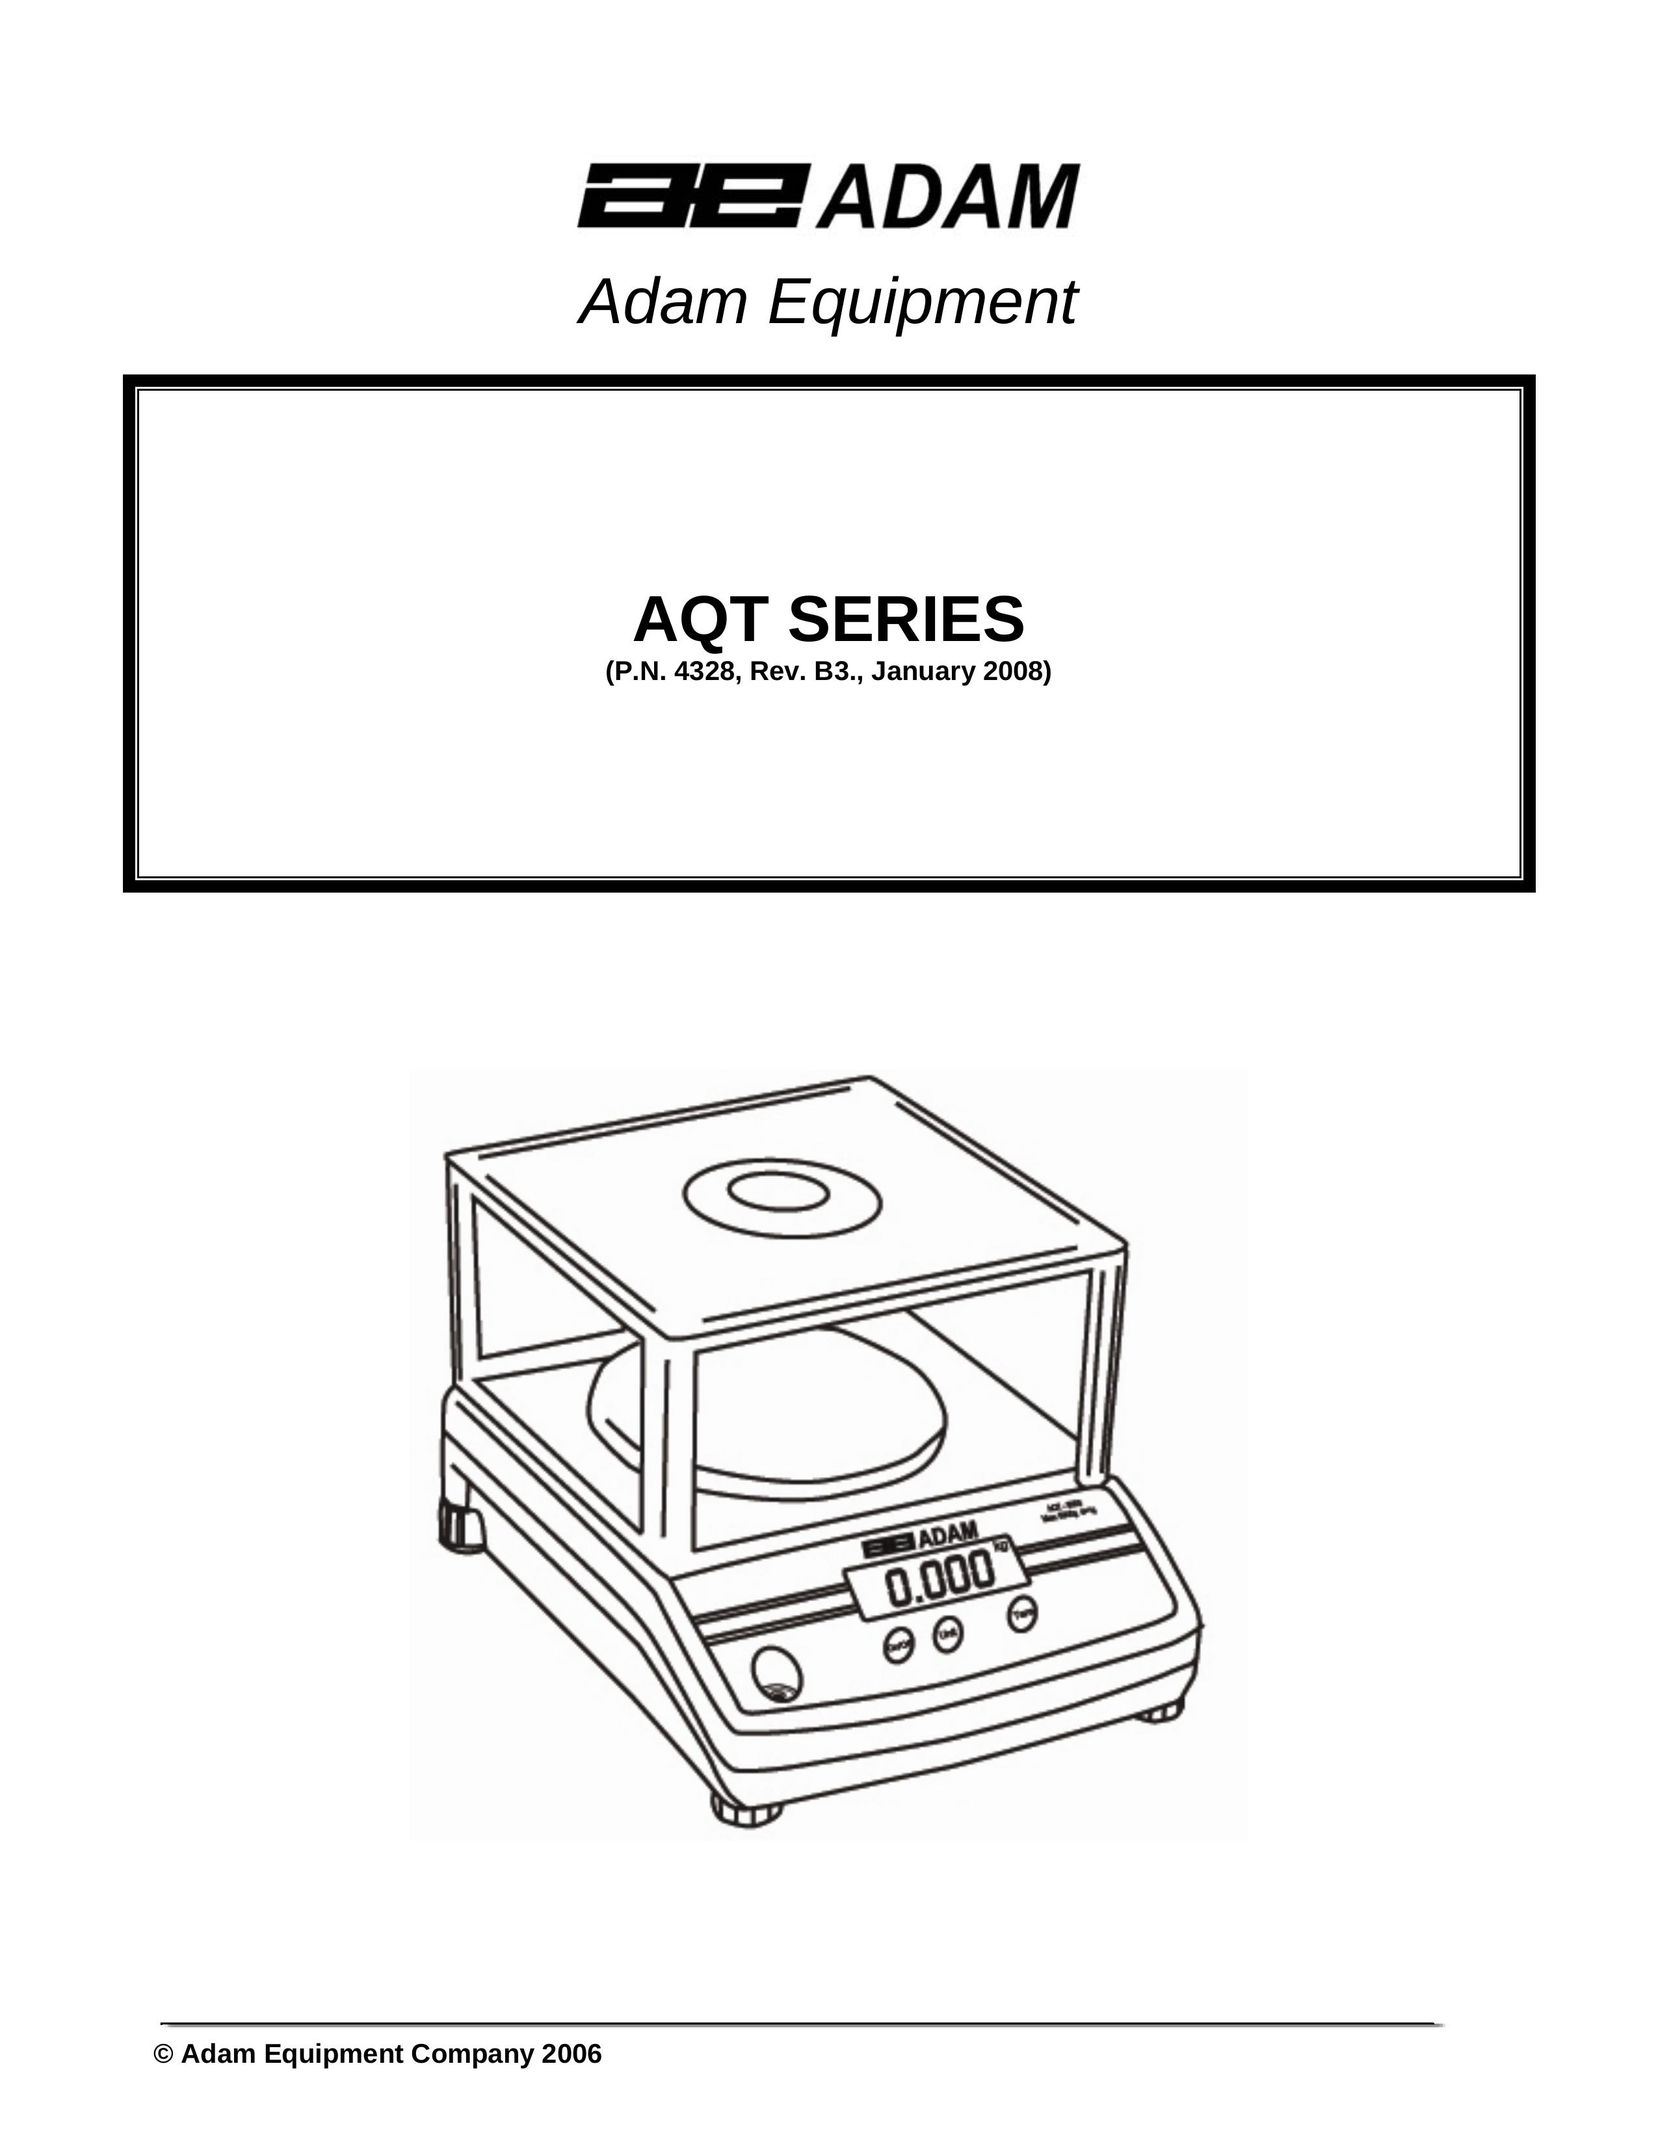 Adams AQT SERIES Building Set User Manual